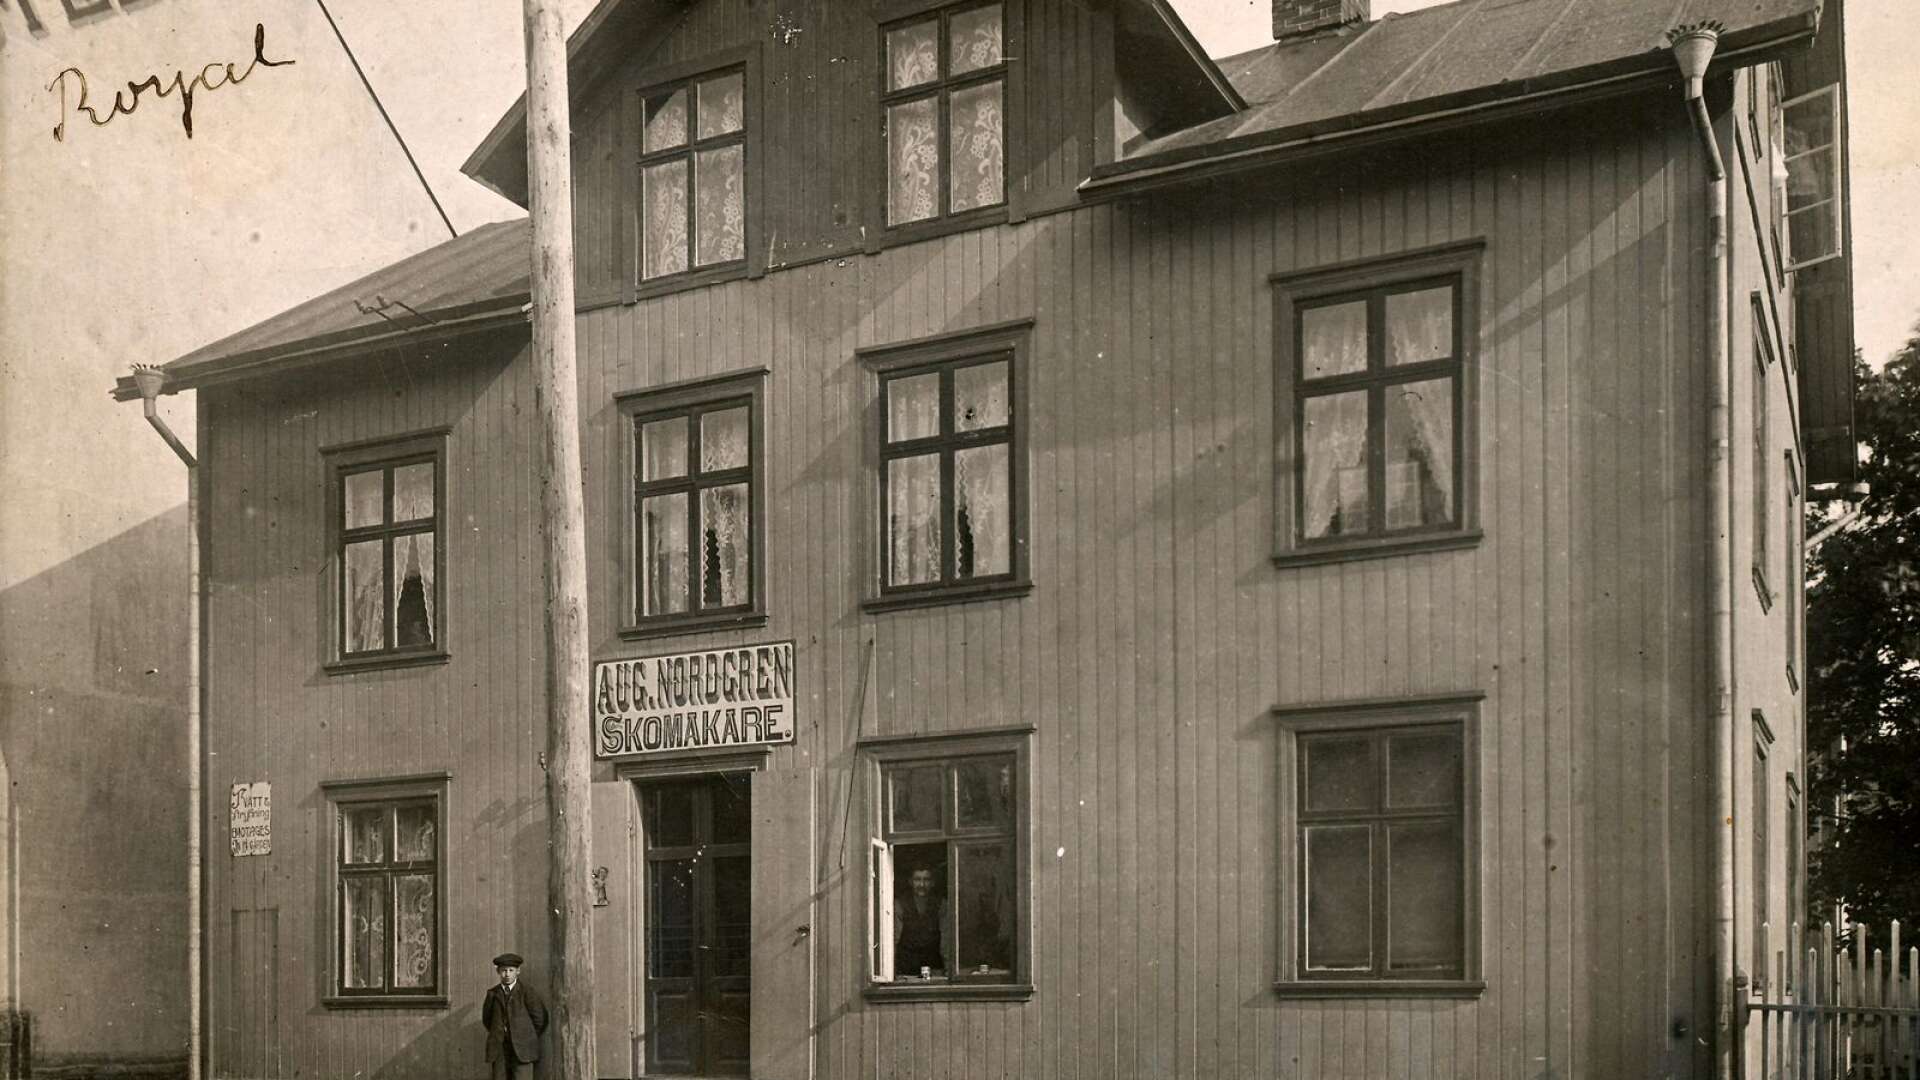 1912 skickade skomakare August Nordgren ett vykort till fröken Balder i Bäckefors. Han valde ett motiv från Kungsgatan 15, en bild där han själv skymtar i fönsteröppningen. Huset finns fortfarande kvar, om än med ett helt nytt utseende.